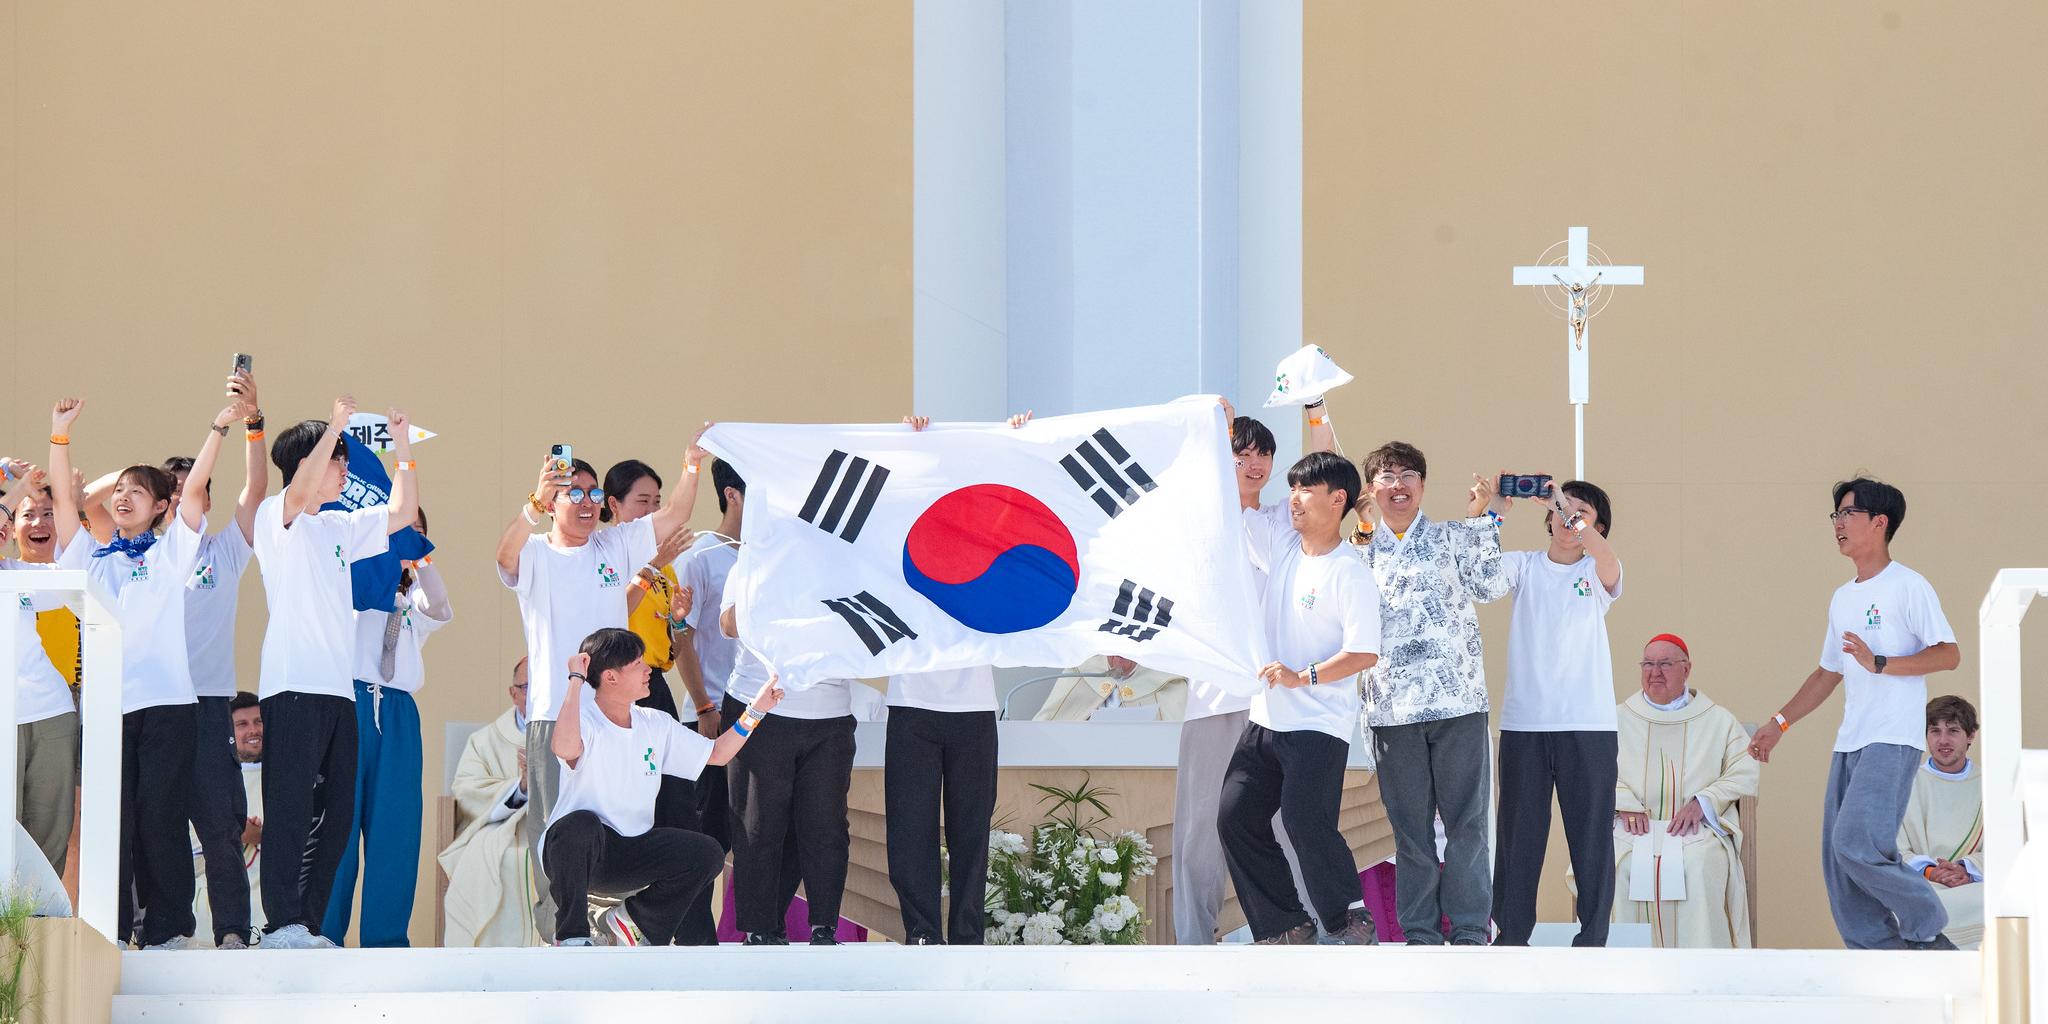 Das nächste Gastgeberland des Weltjugendtages wird Südkorea sein